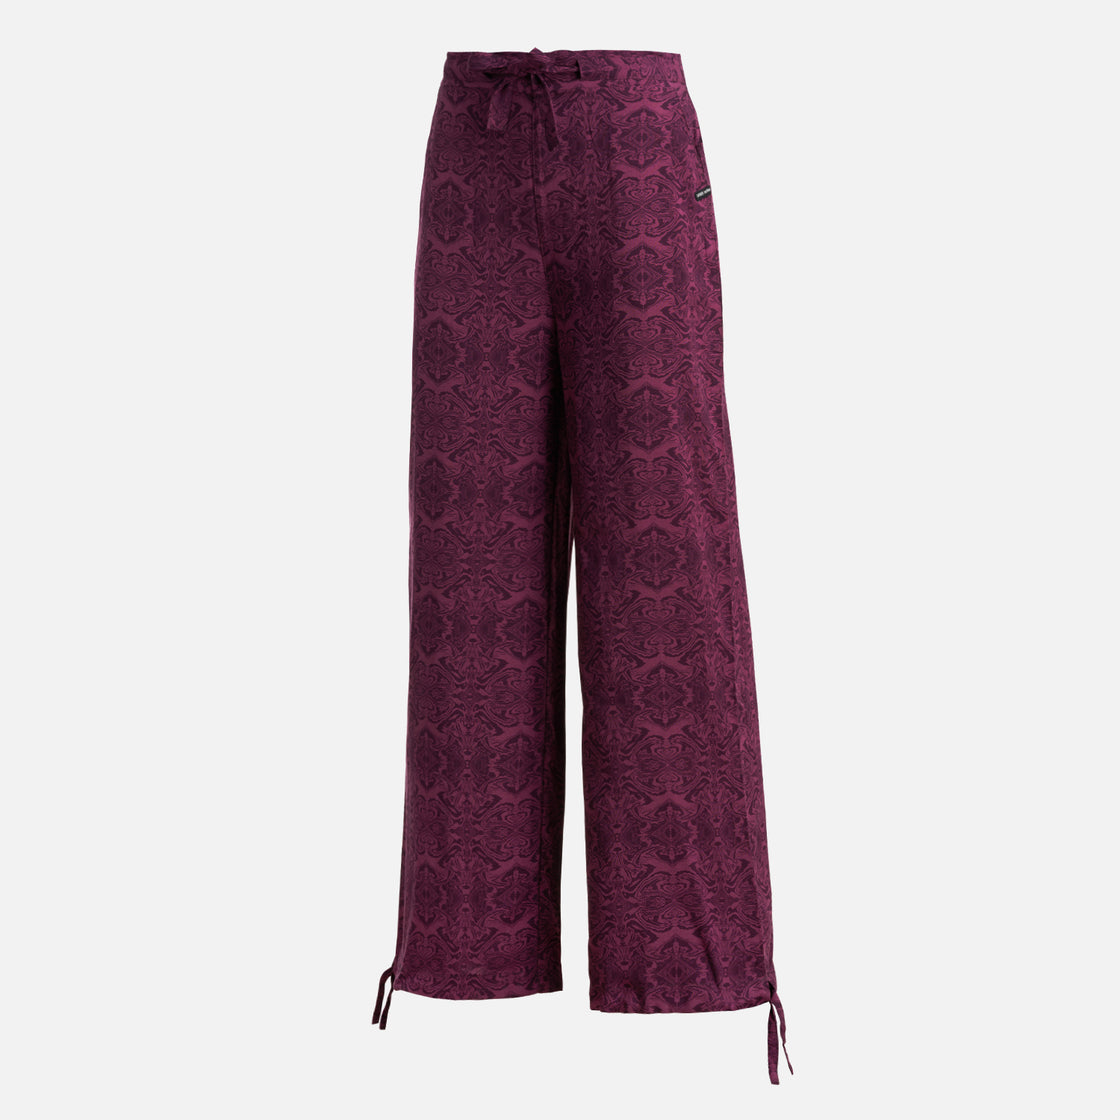 Pantalon Mujer Jipon Print Burdeo Haka Honu